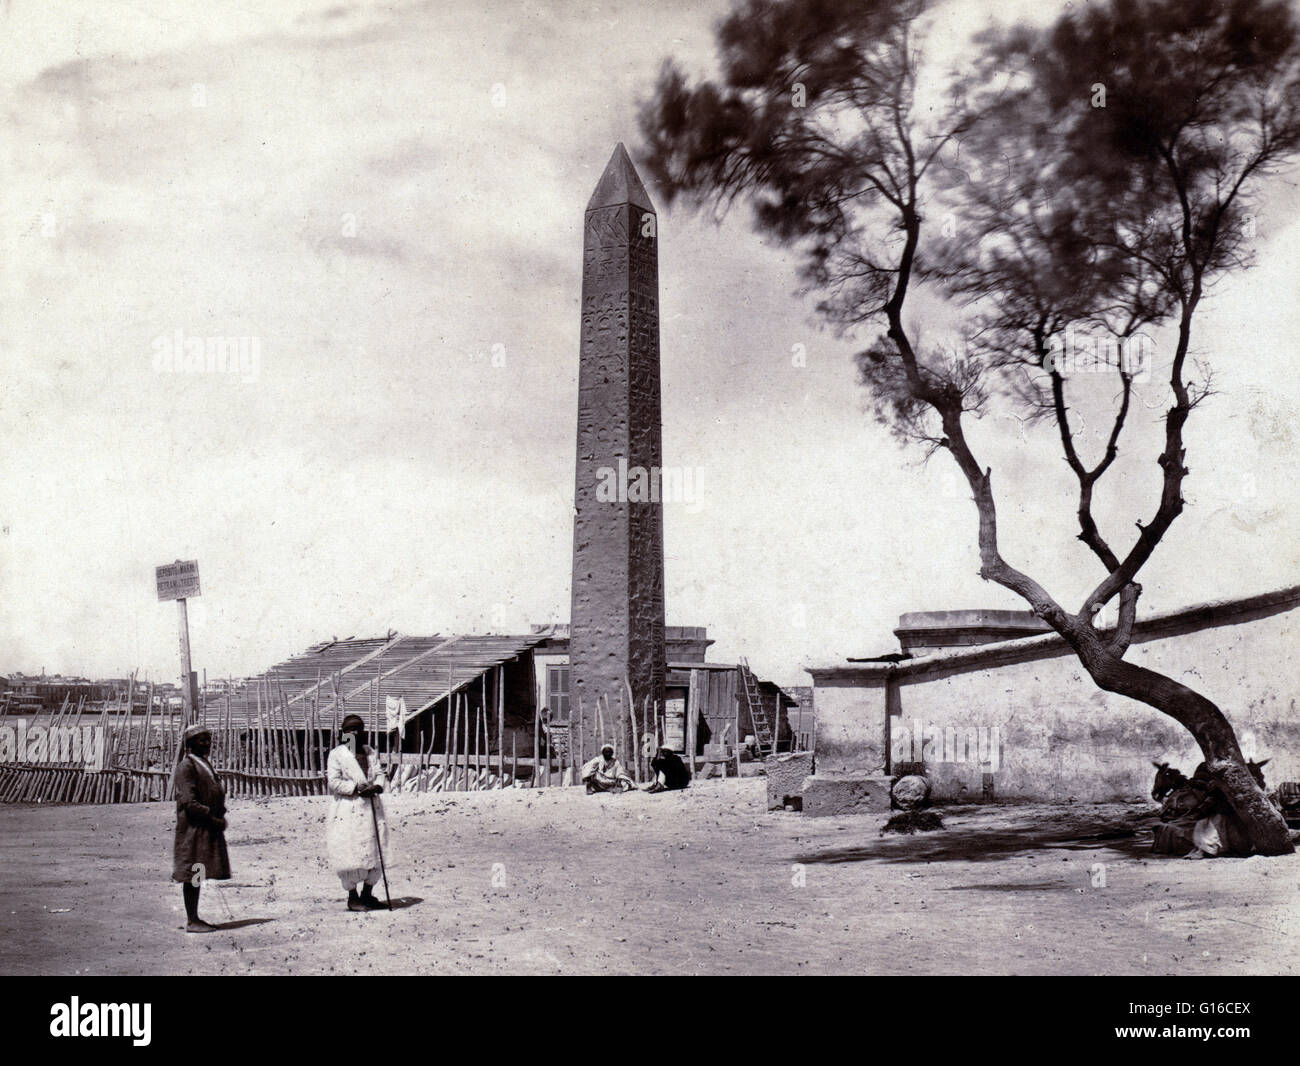 Kleopatras Nadel um 1856-1860 von Francis Frith fotografiert. Kleopatras Nadel ist der populäre Name für jede der drei antiken ägyptischen Obelisken in London, Paris und New York City während des 19. Jahrhunderts wieder aufgebaut. Alle drei Nadeln sind echte Anci Stockfoto